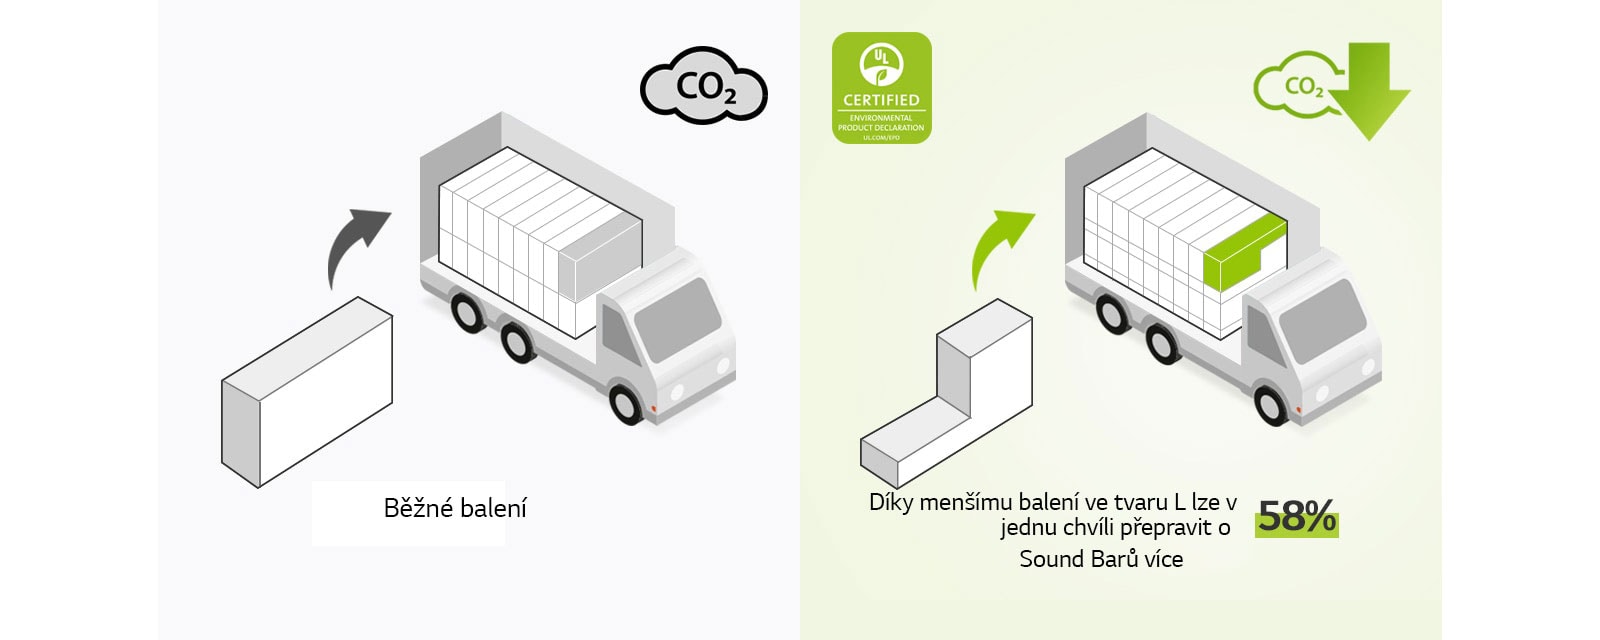 Na levé straně je piktogram běžného balení ve tvaru obdélníku a nákladní vůz s mnoha obdélníkovými krabicemi. Na obrázku je také ikona CO2. Na pravé straně je balení ve tvaru L a nákladní vůz, ve kterém je naloženo mnohem více krabic. Na obrázku je také ikona snížení CO2.